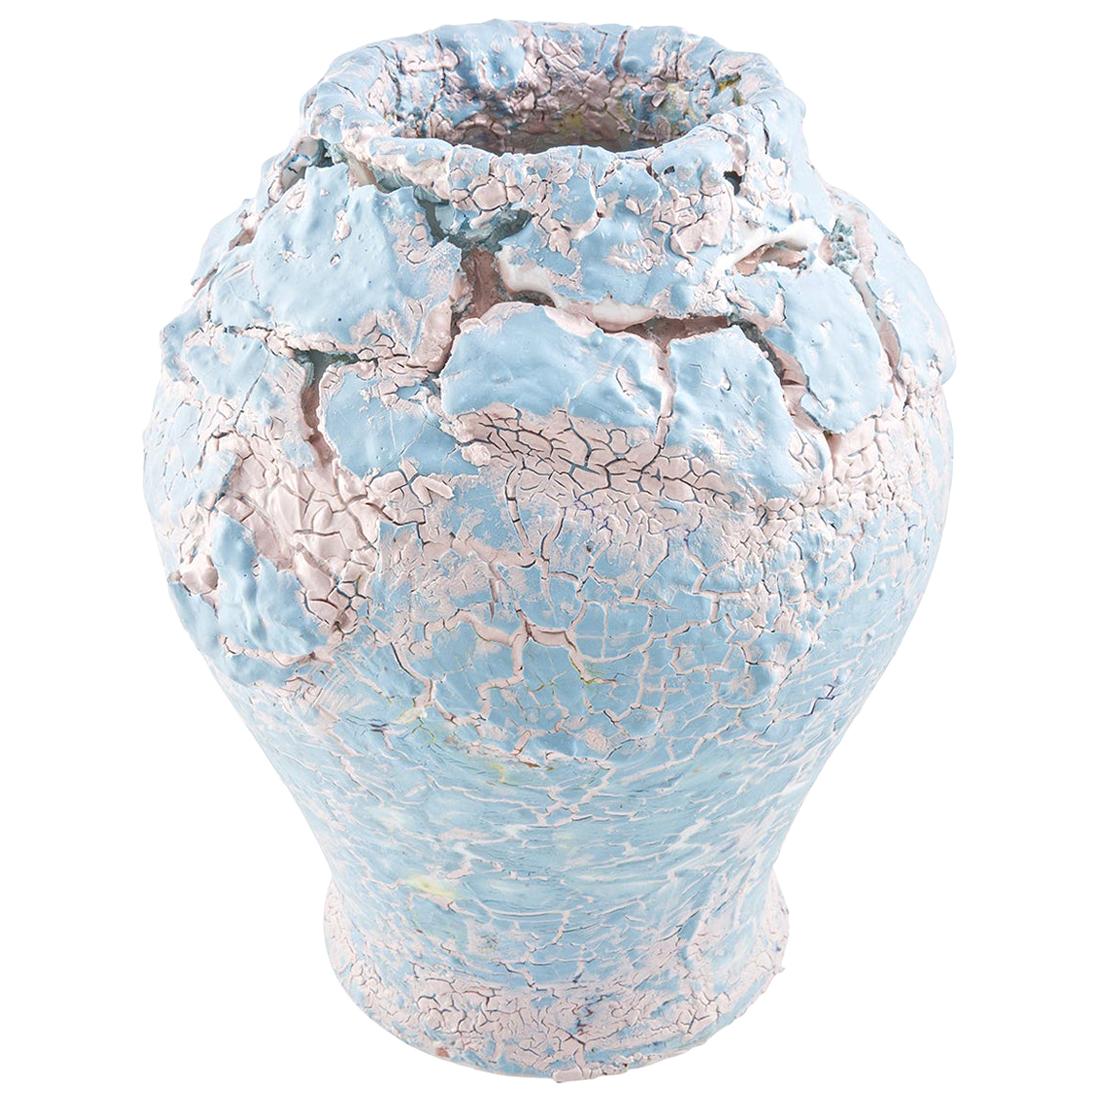 Grand vase bleu craquelé